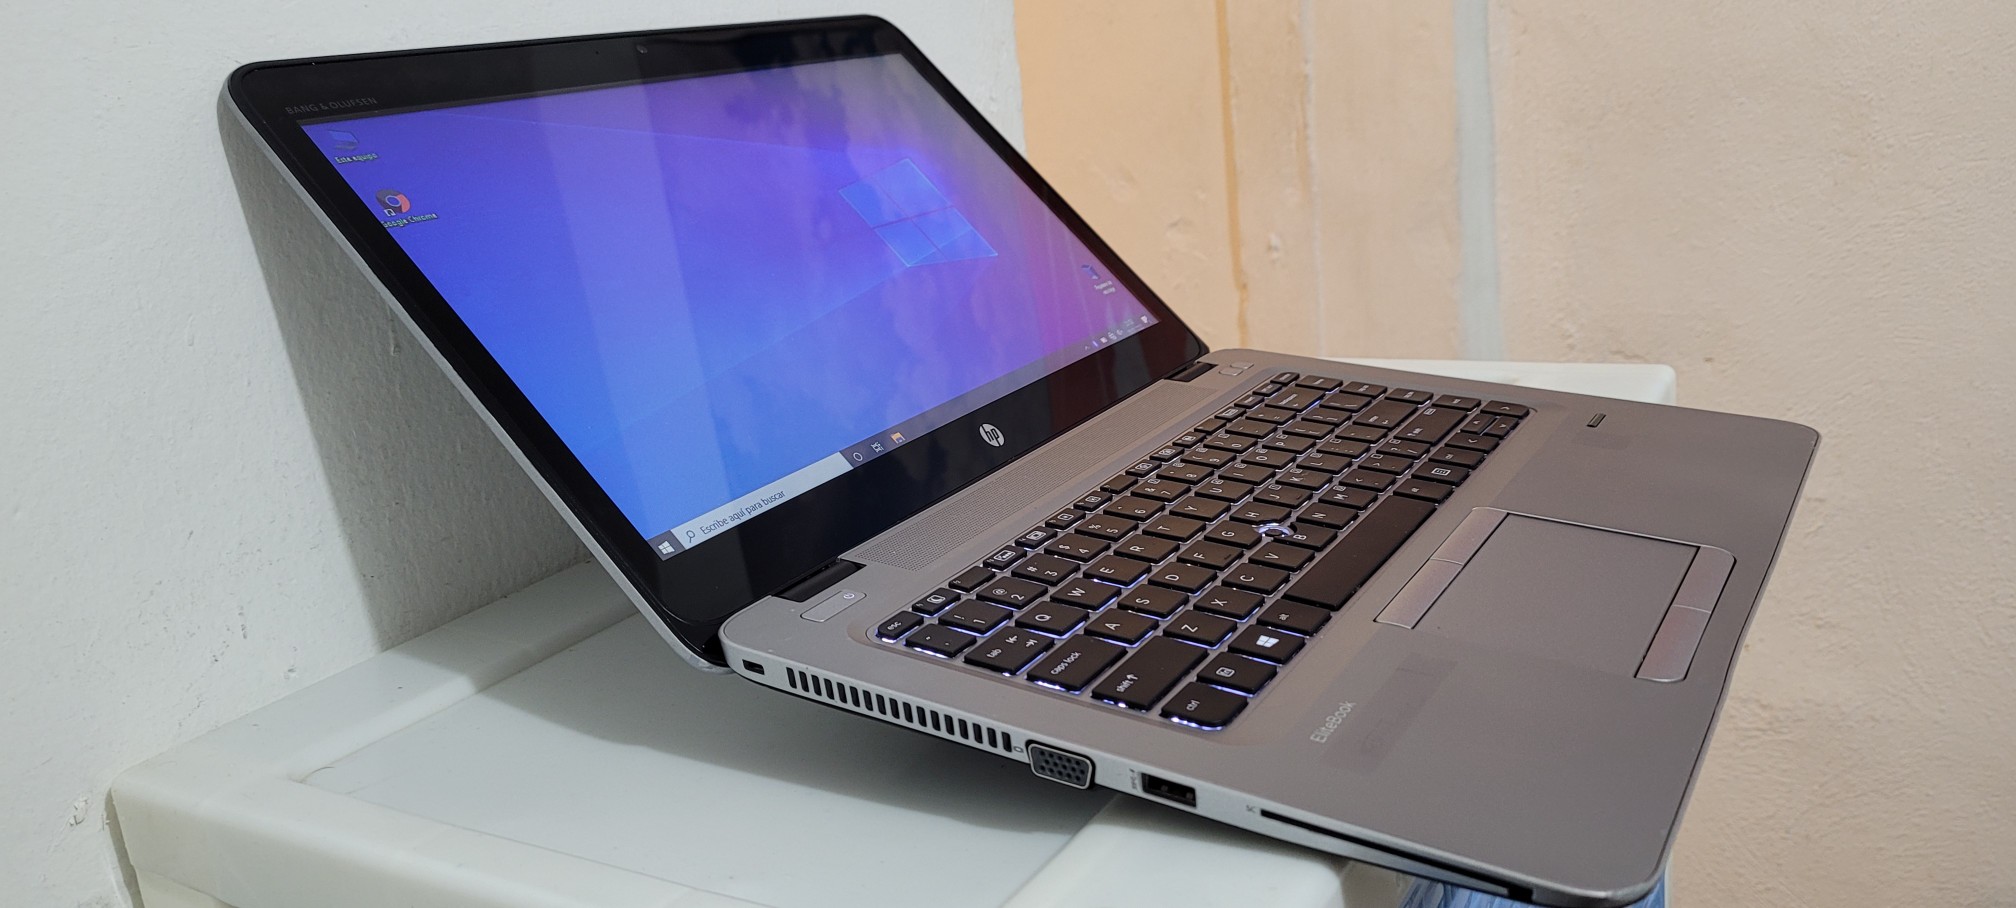 computadoras y laptops - Laptop hp 14 Pulg Core i5 6ta Ram 8gb ddr4 Disco 128gb y 320gb hdmi 1